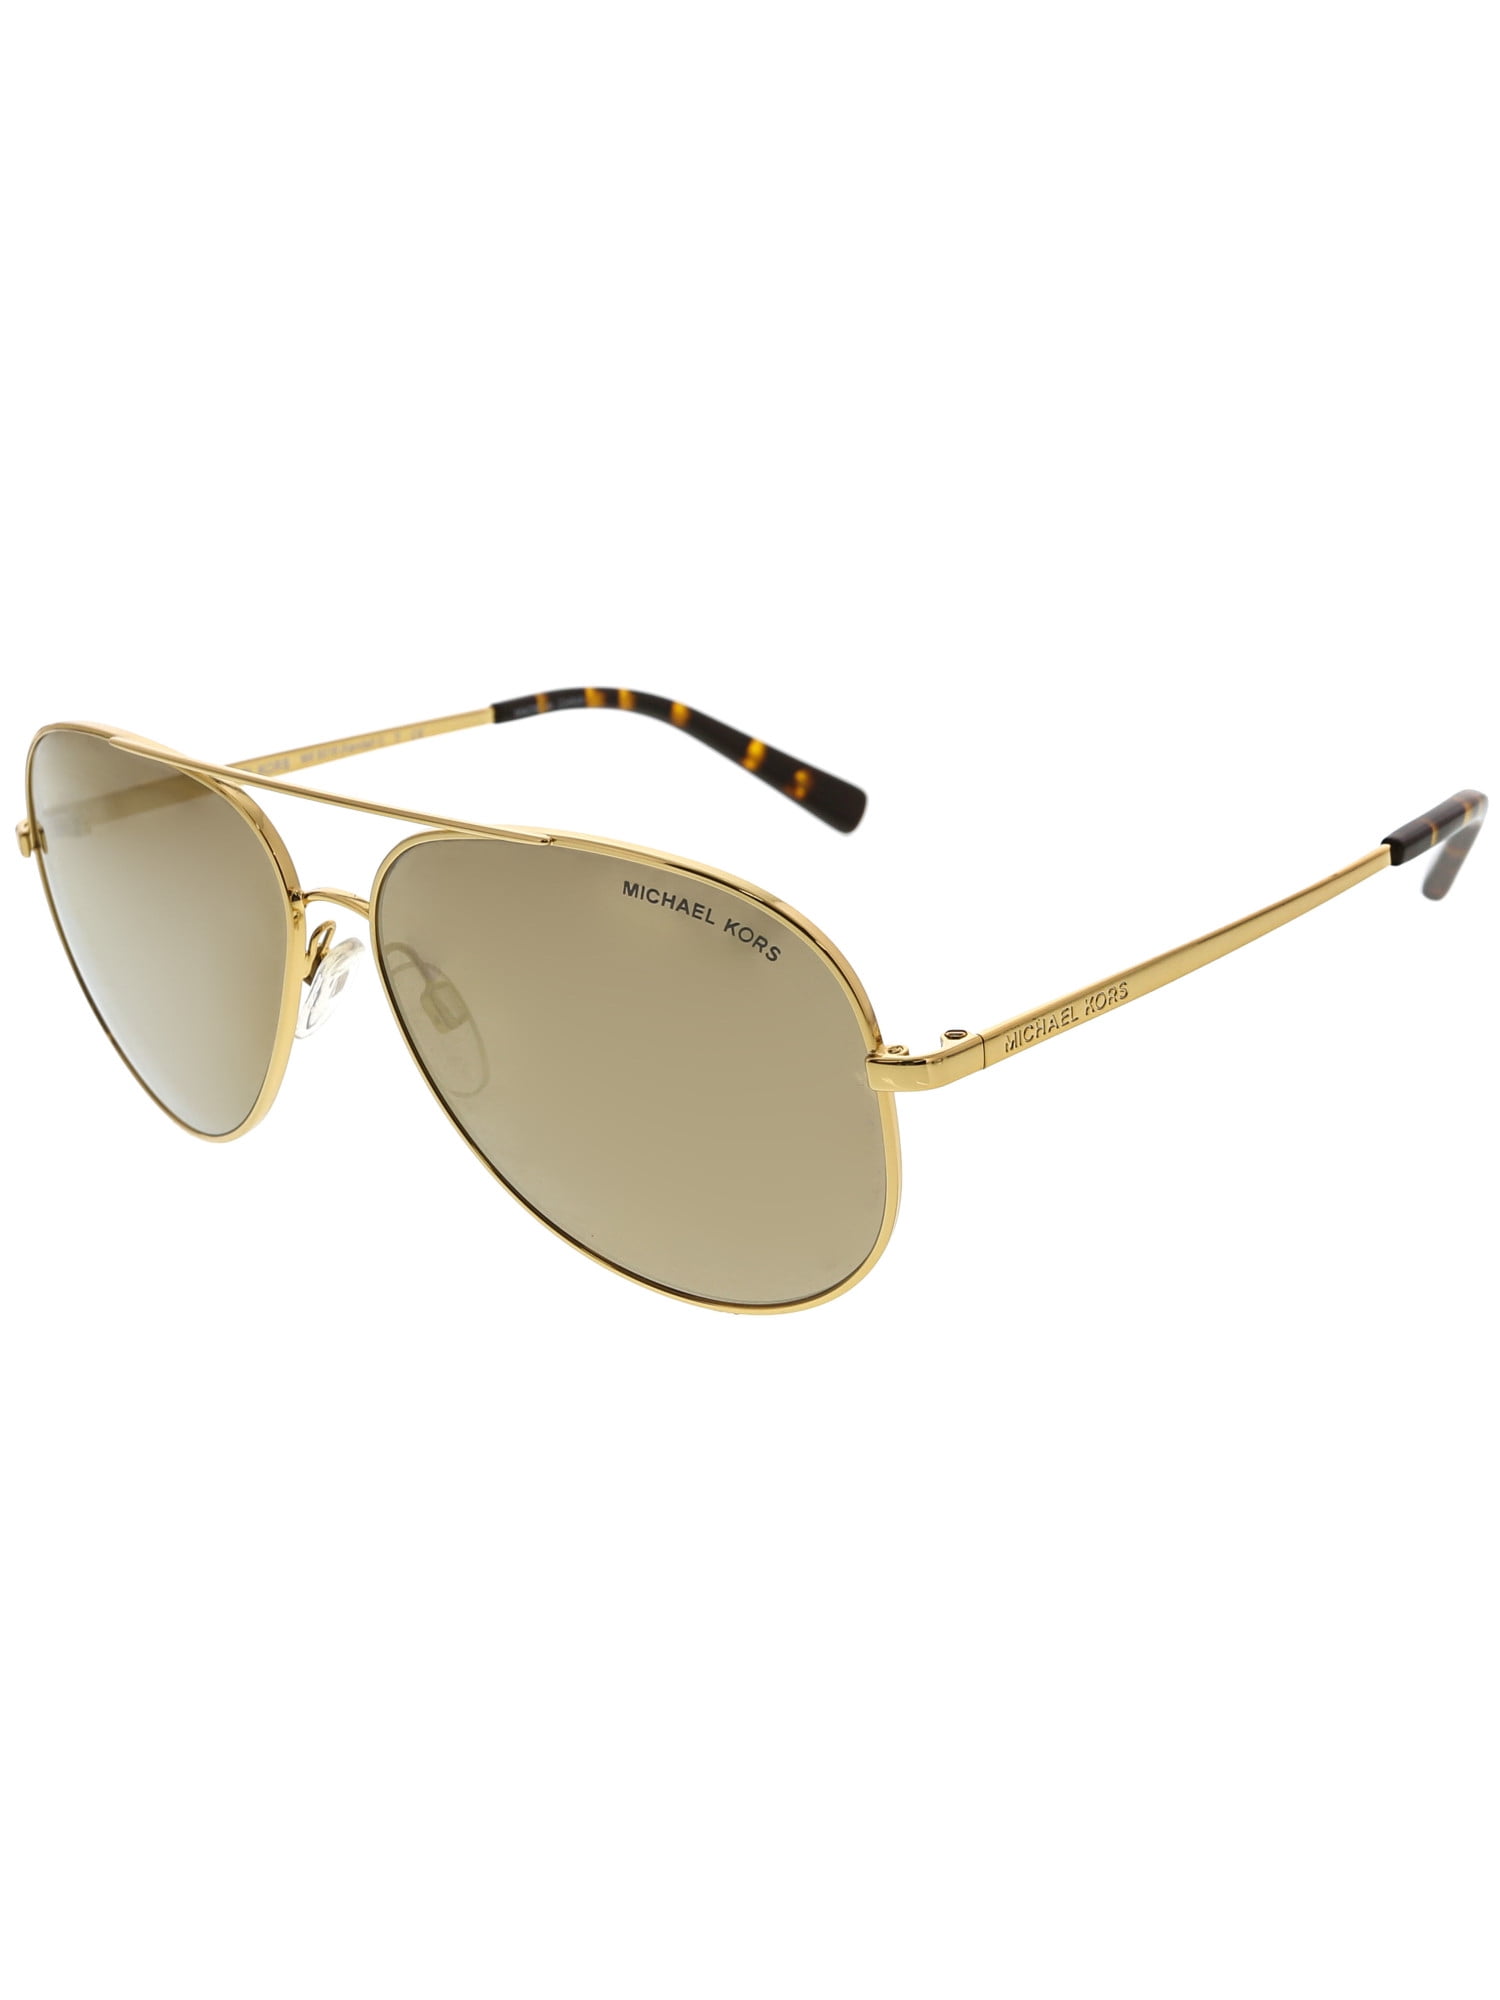 Michael Kors Mk5004 Chelsea Sunglasses Store 59 OFF   wwwbridgepartnersllccom